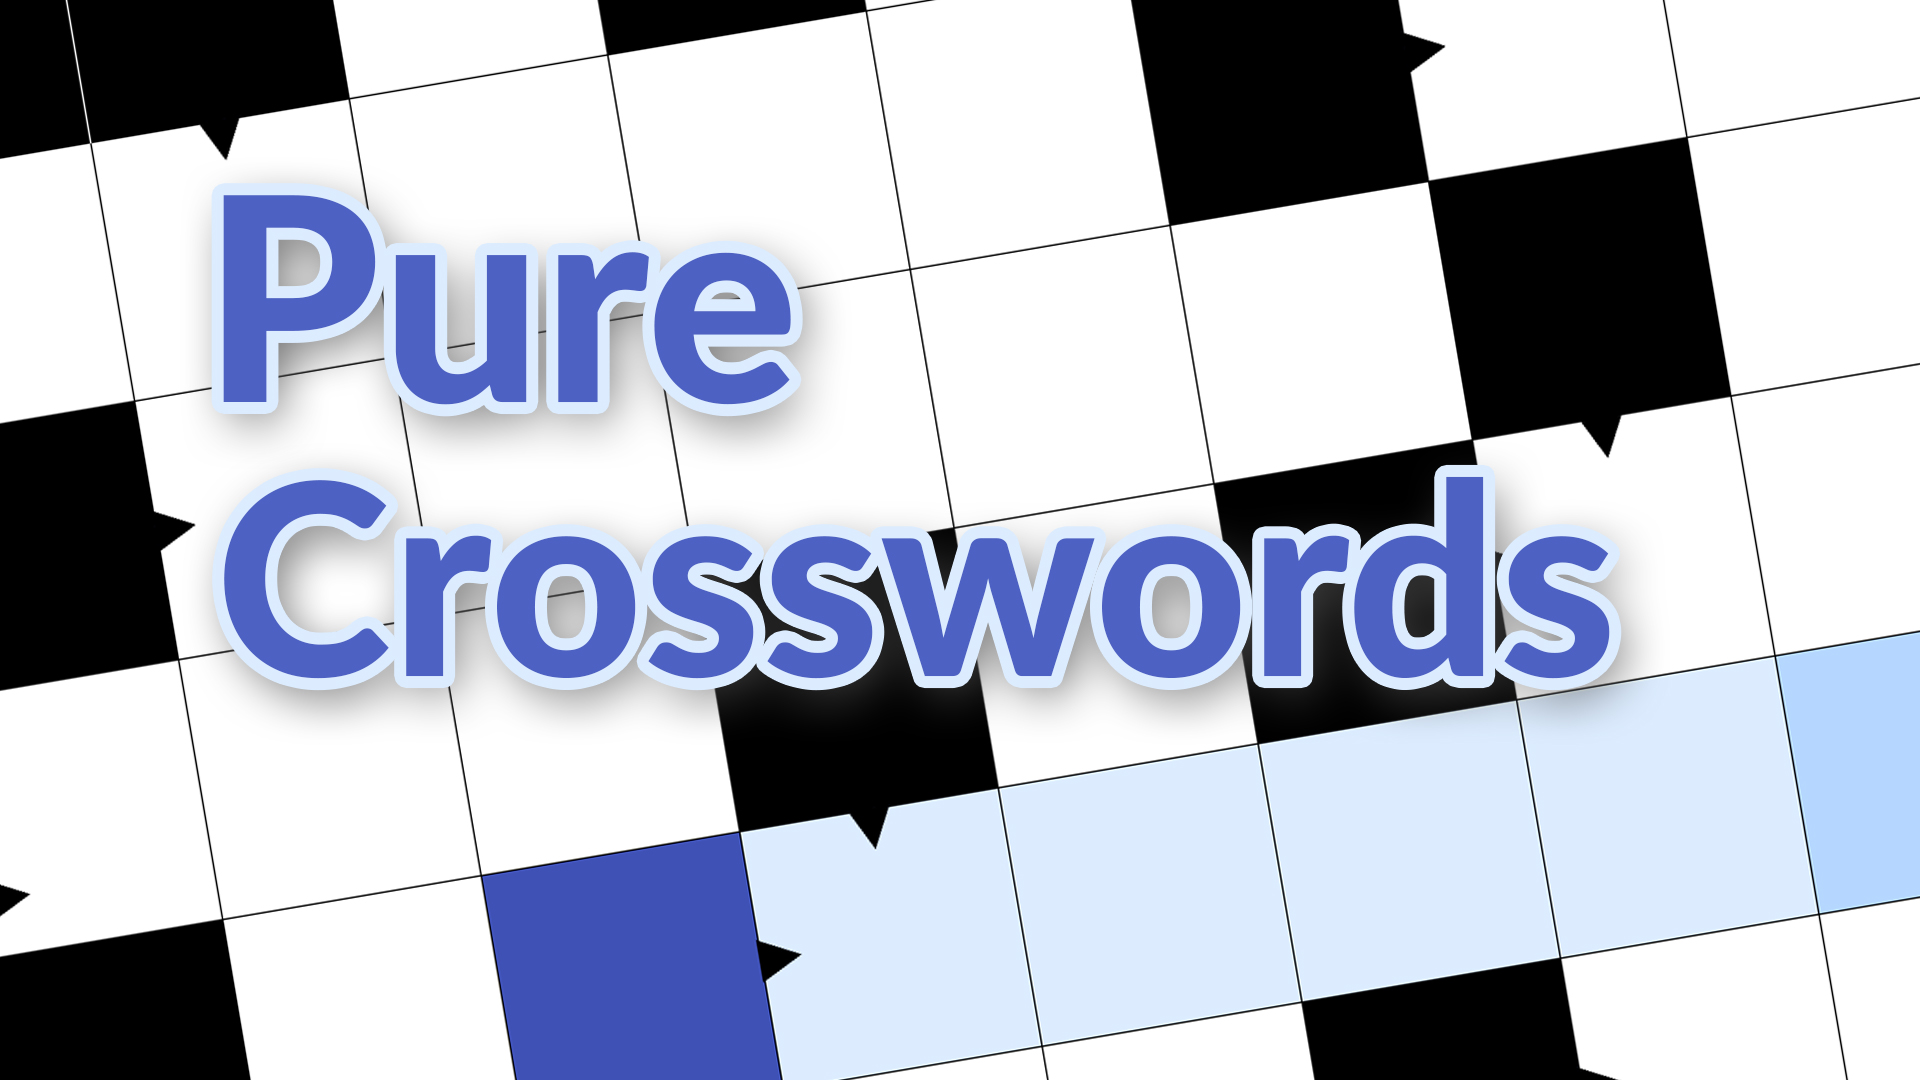 Pure Crosswords